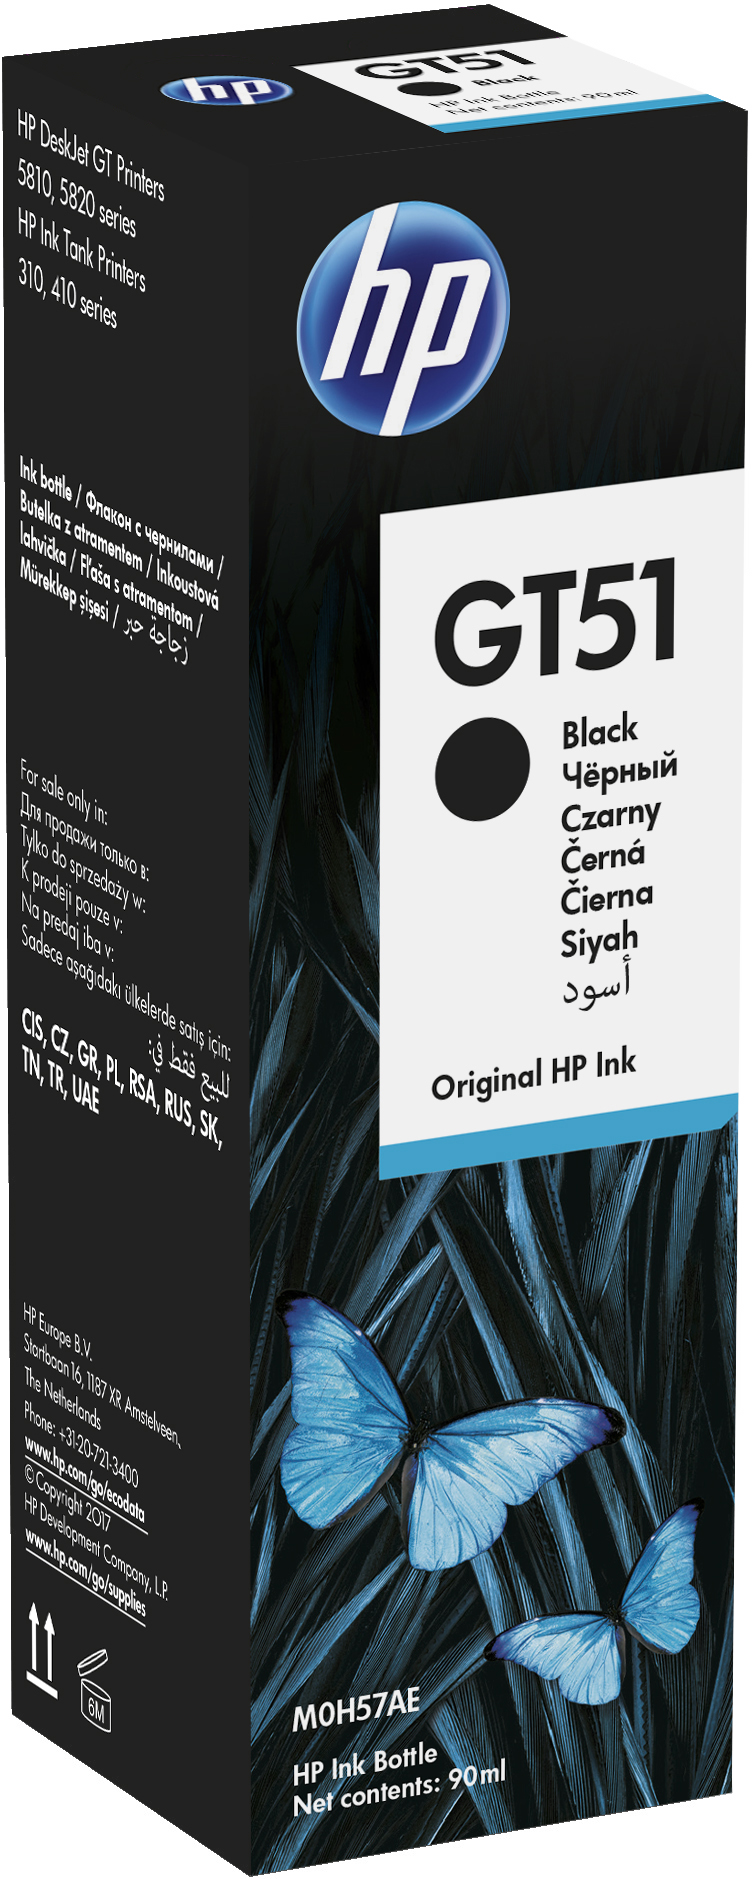 HP GT51 Black Original Ink